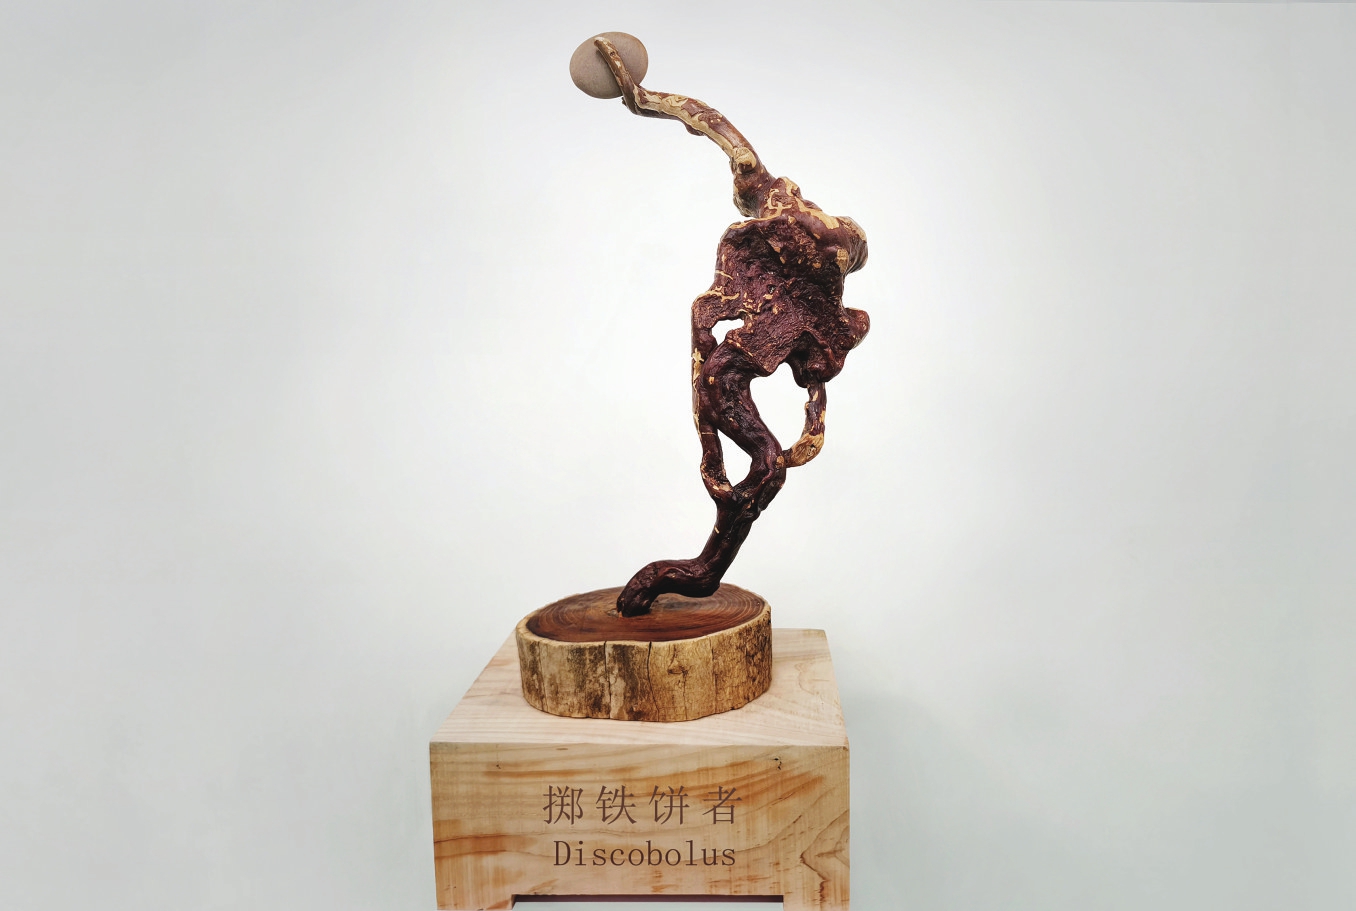 望江根雕《掷铁饼者》入选庆亚运中邦体育艺术展